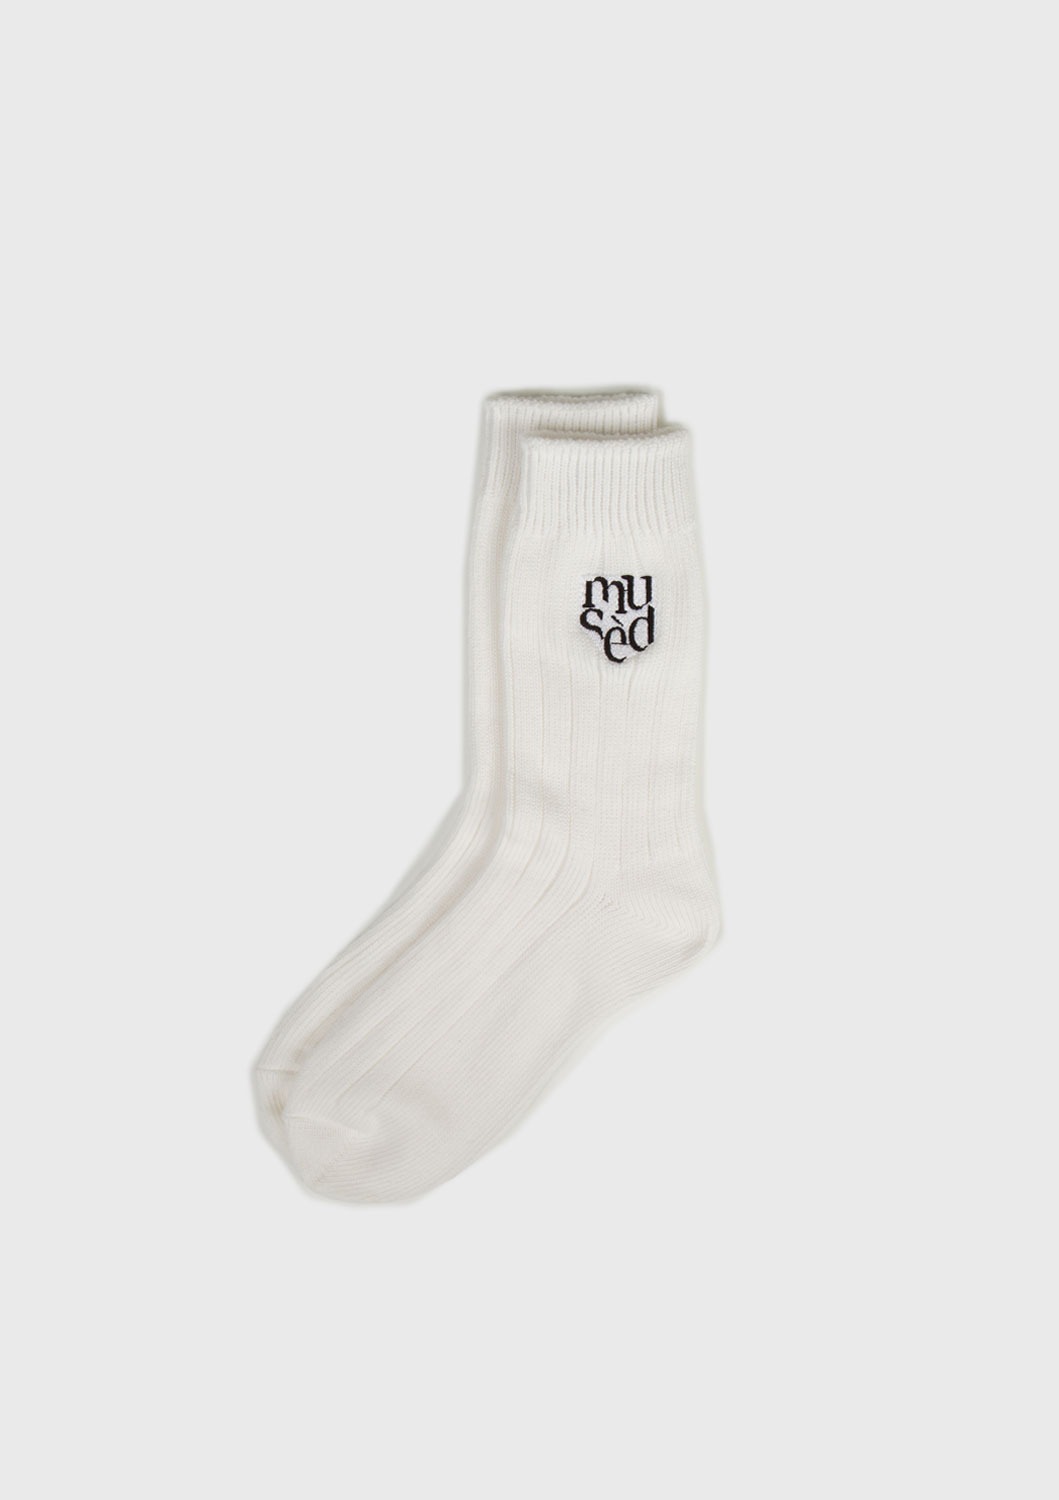 Musèd Logo socks - White Cotton